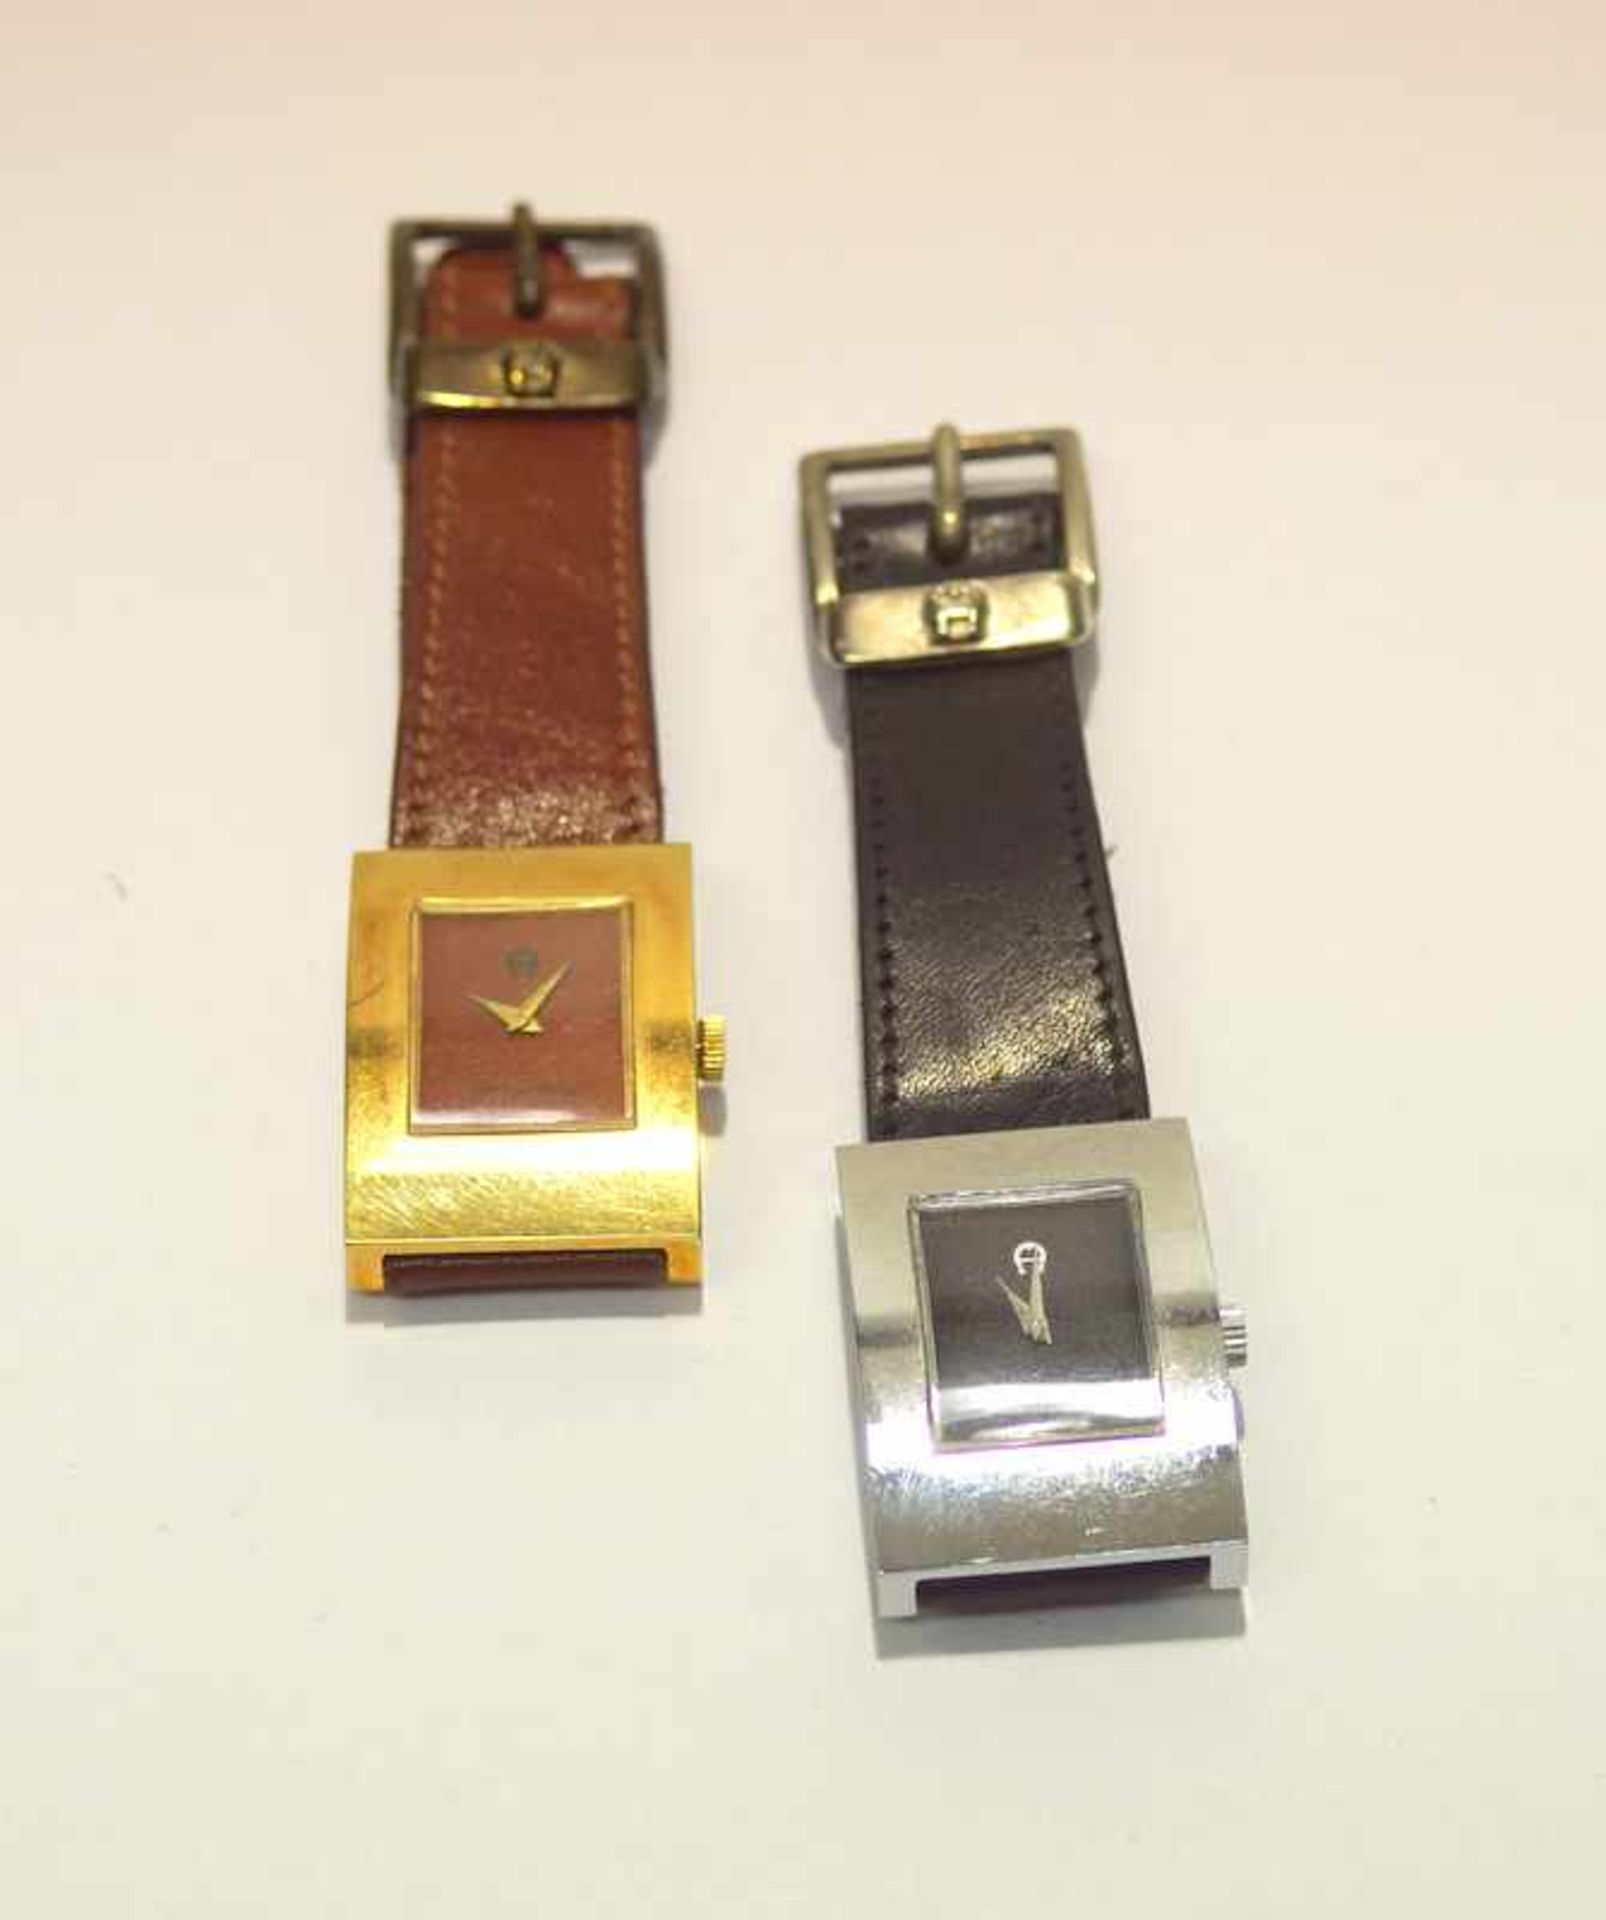 Aigner, Etienne (München): Zwei Armbanduhren< - Bild 2 aus 2